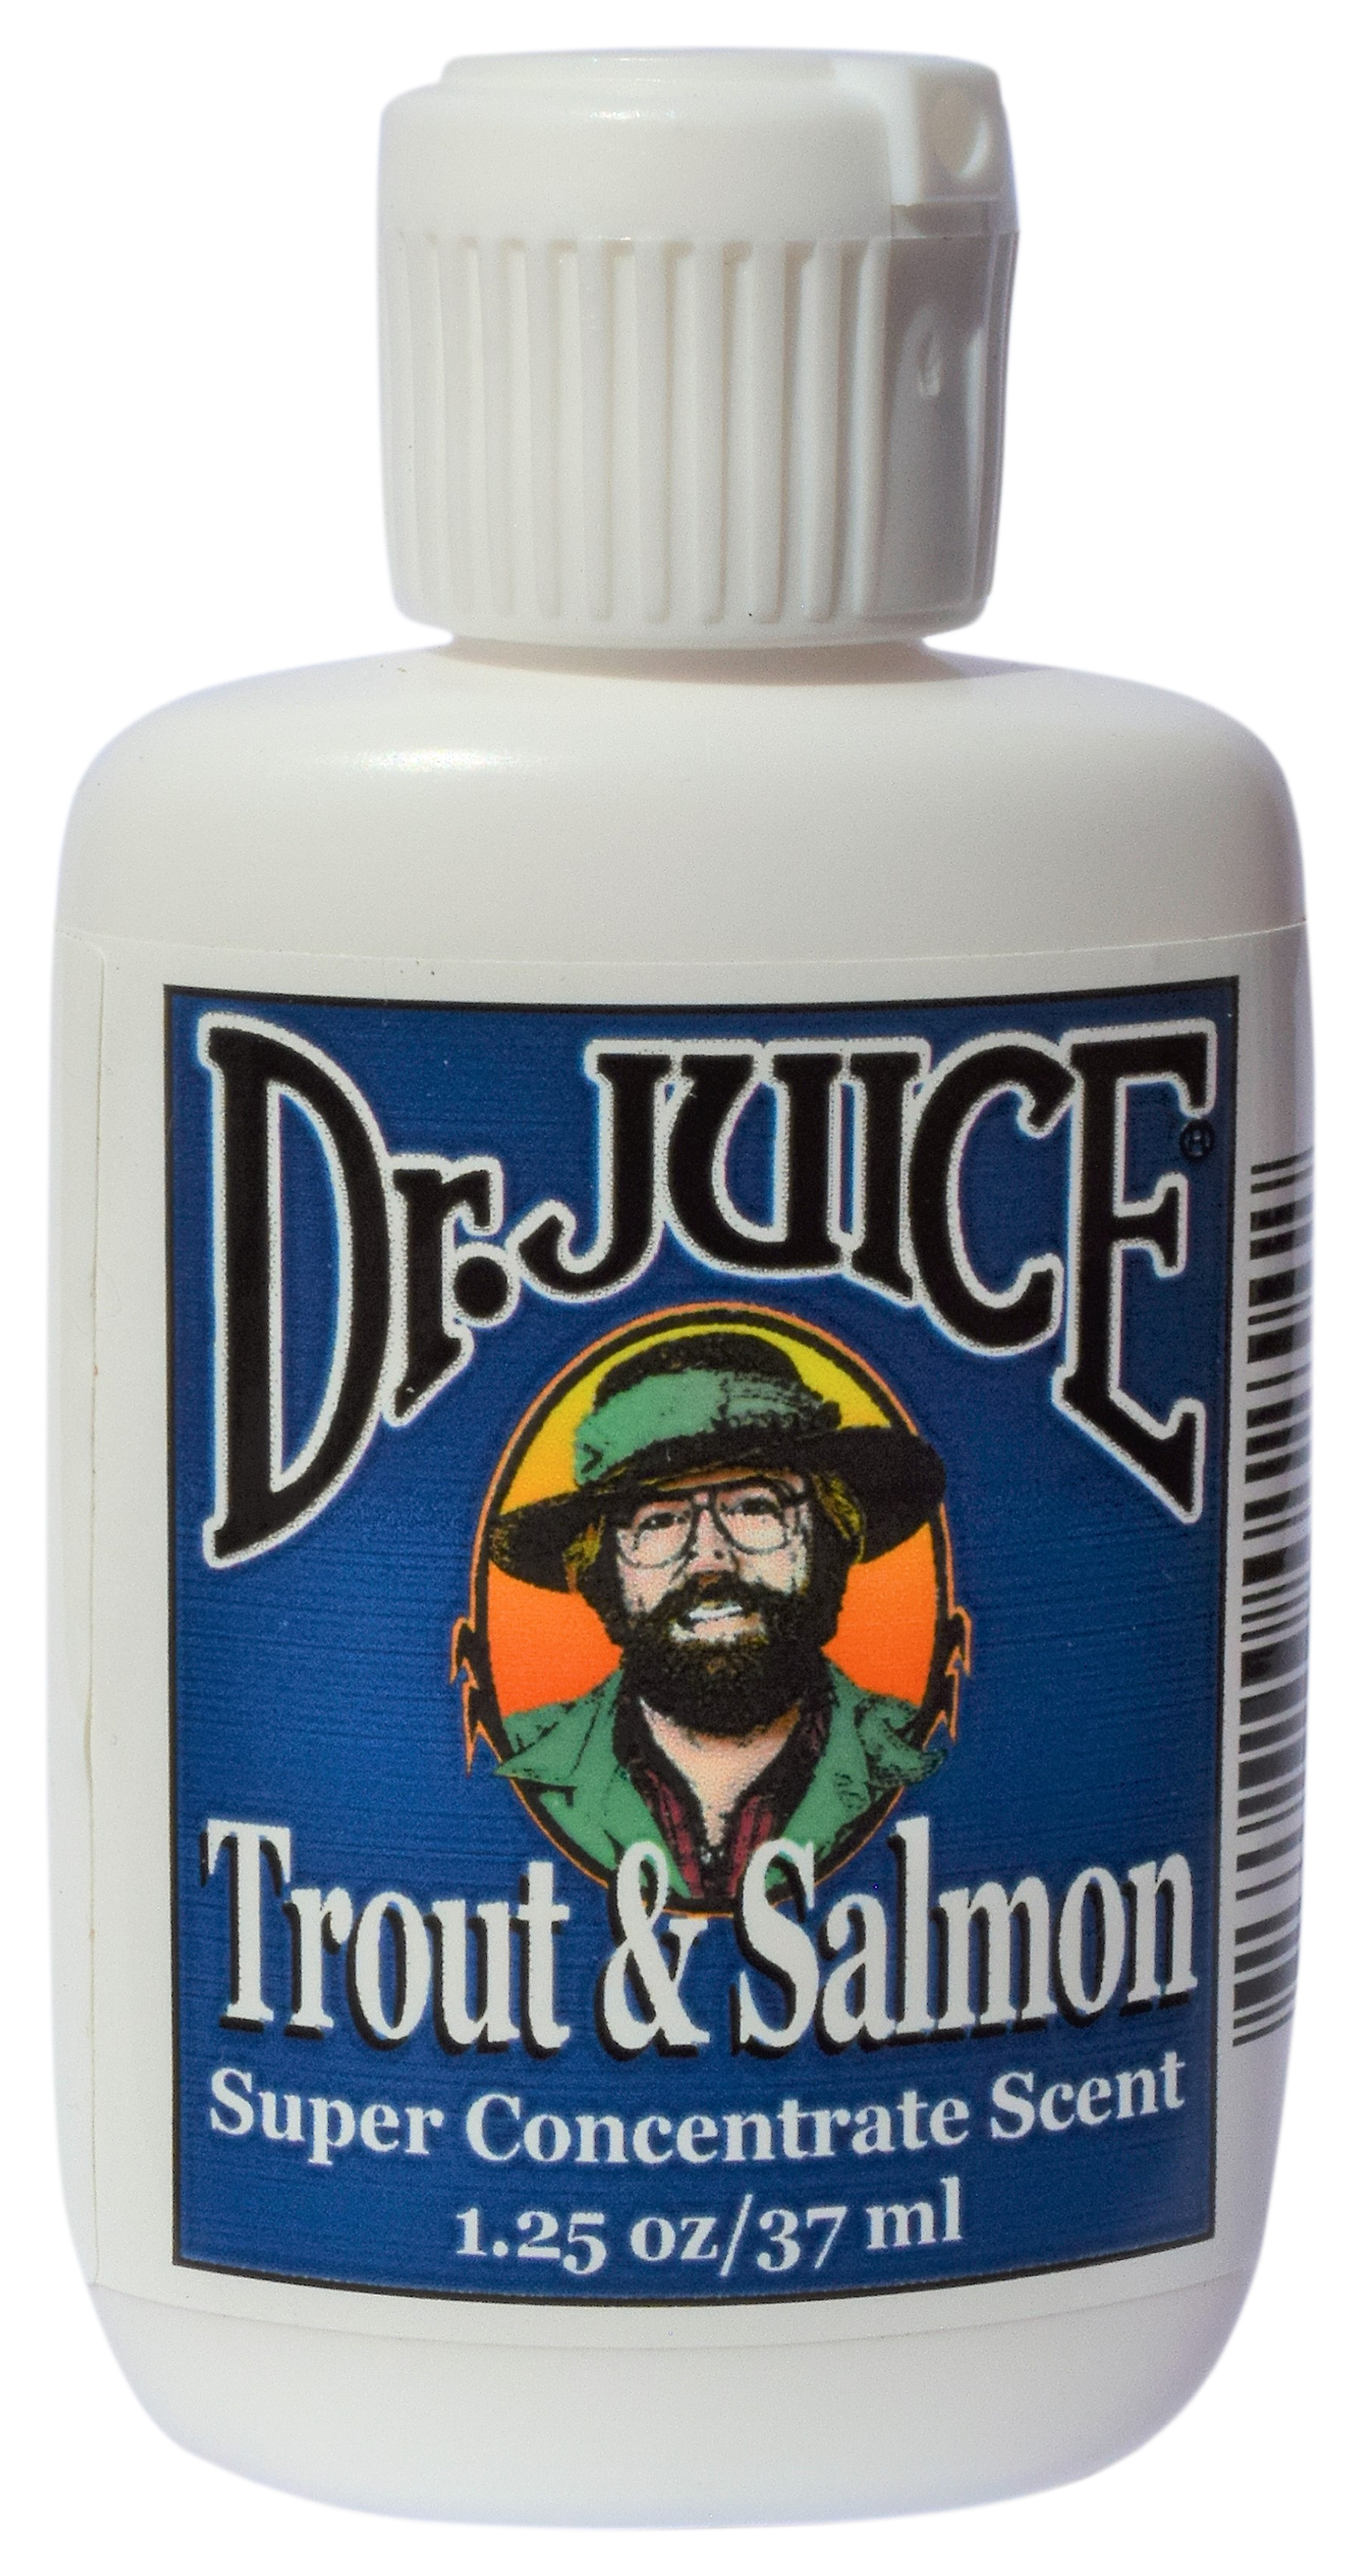 Dr. Juice 1.25 oz. Trout/Salmon Concentrate